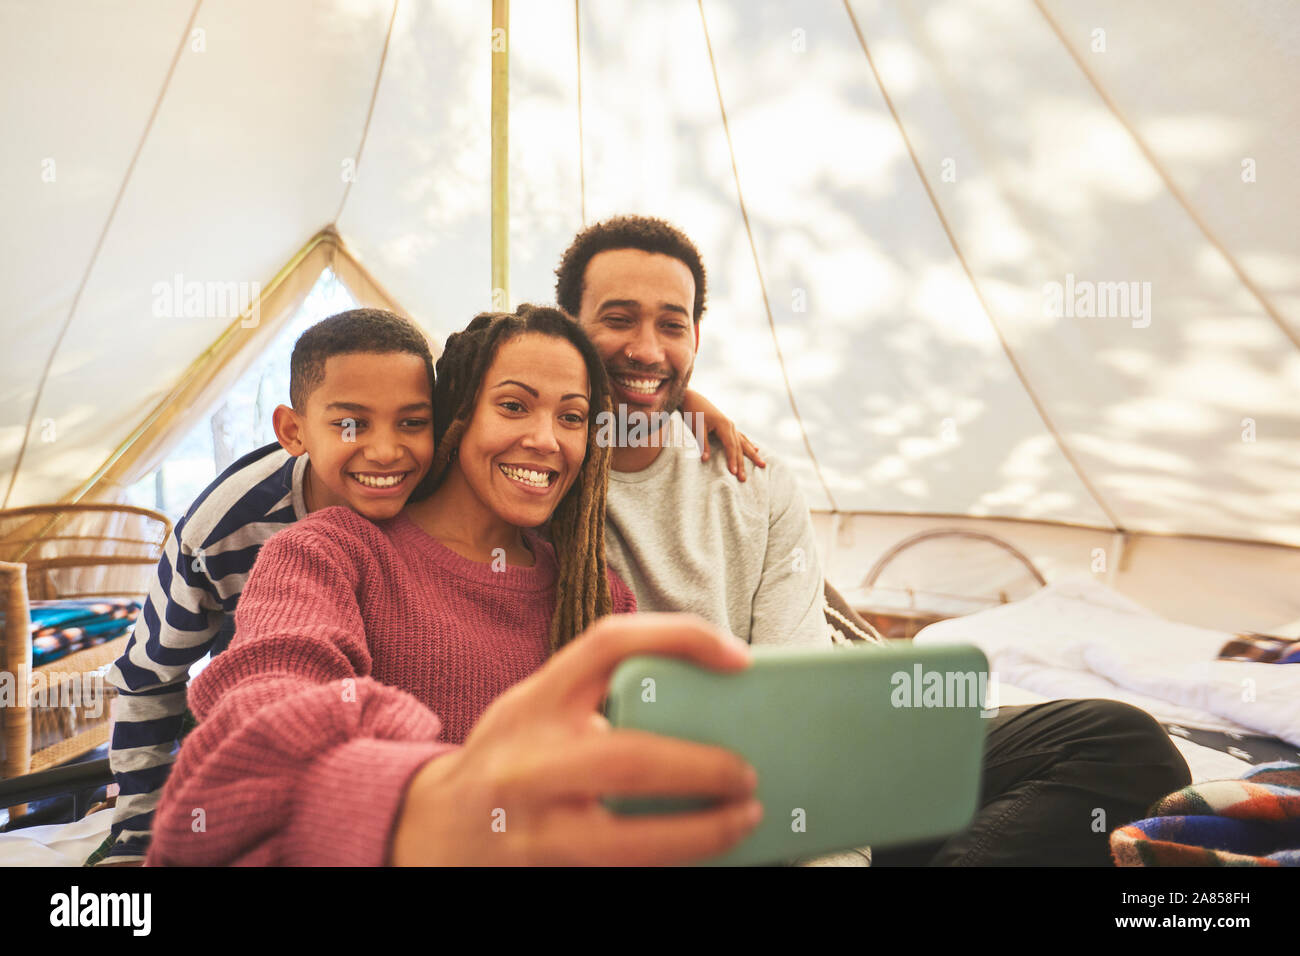 Glücklich, liebevolle Familie selfie im Camping Jurte Stockfoto